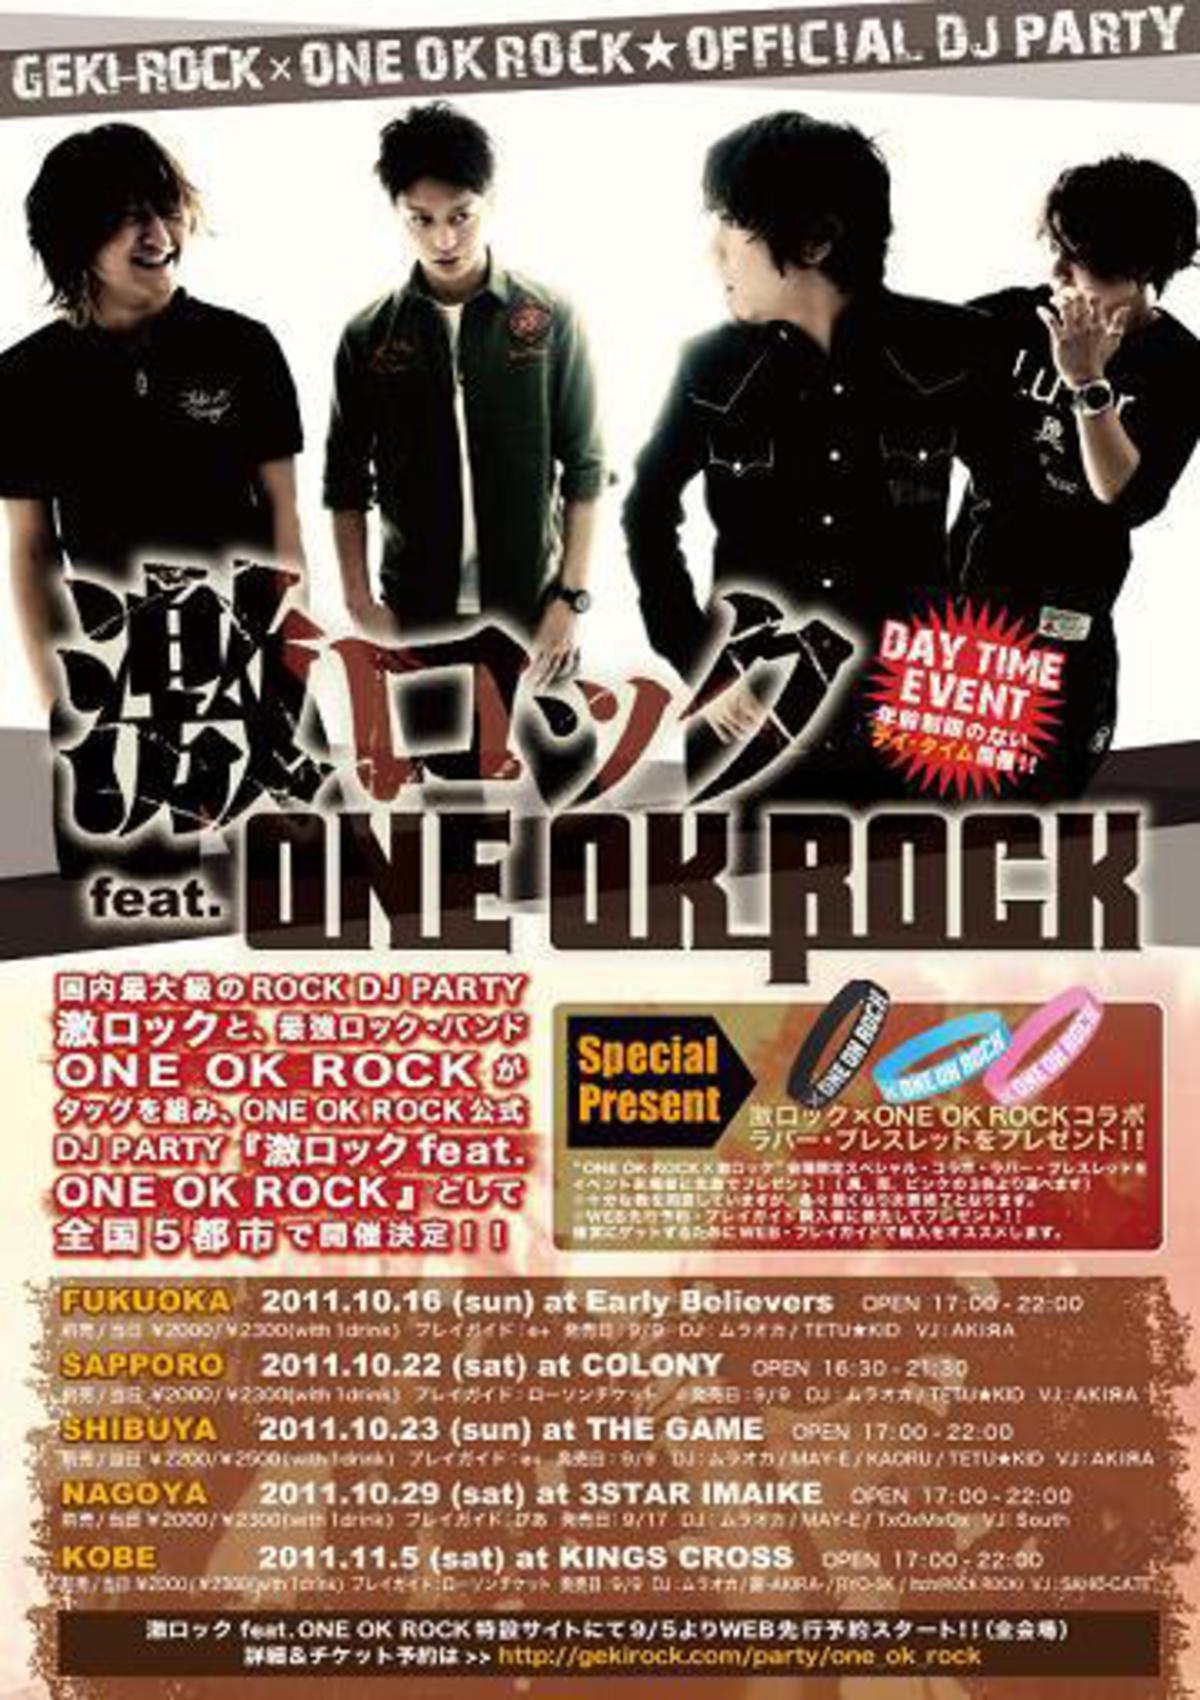 当日券あり いよいよ明日は札幌 明後日は渋谷で開催 激ロック Feat One Ok Rock 参加者にラバー ブレスレッドに加え 非売品 One Ok Rockイヤホン もプレゼント 激ロック ニュース